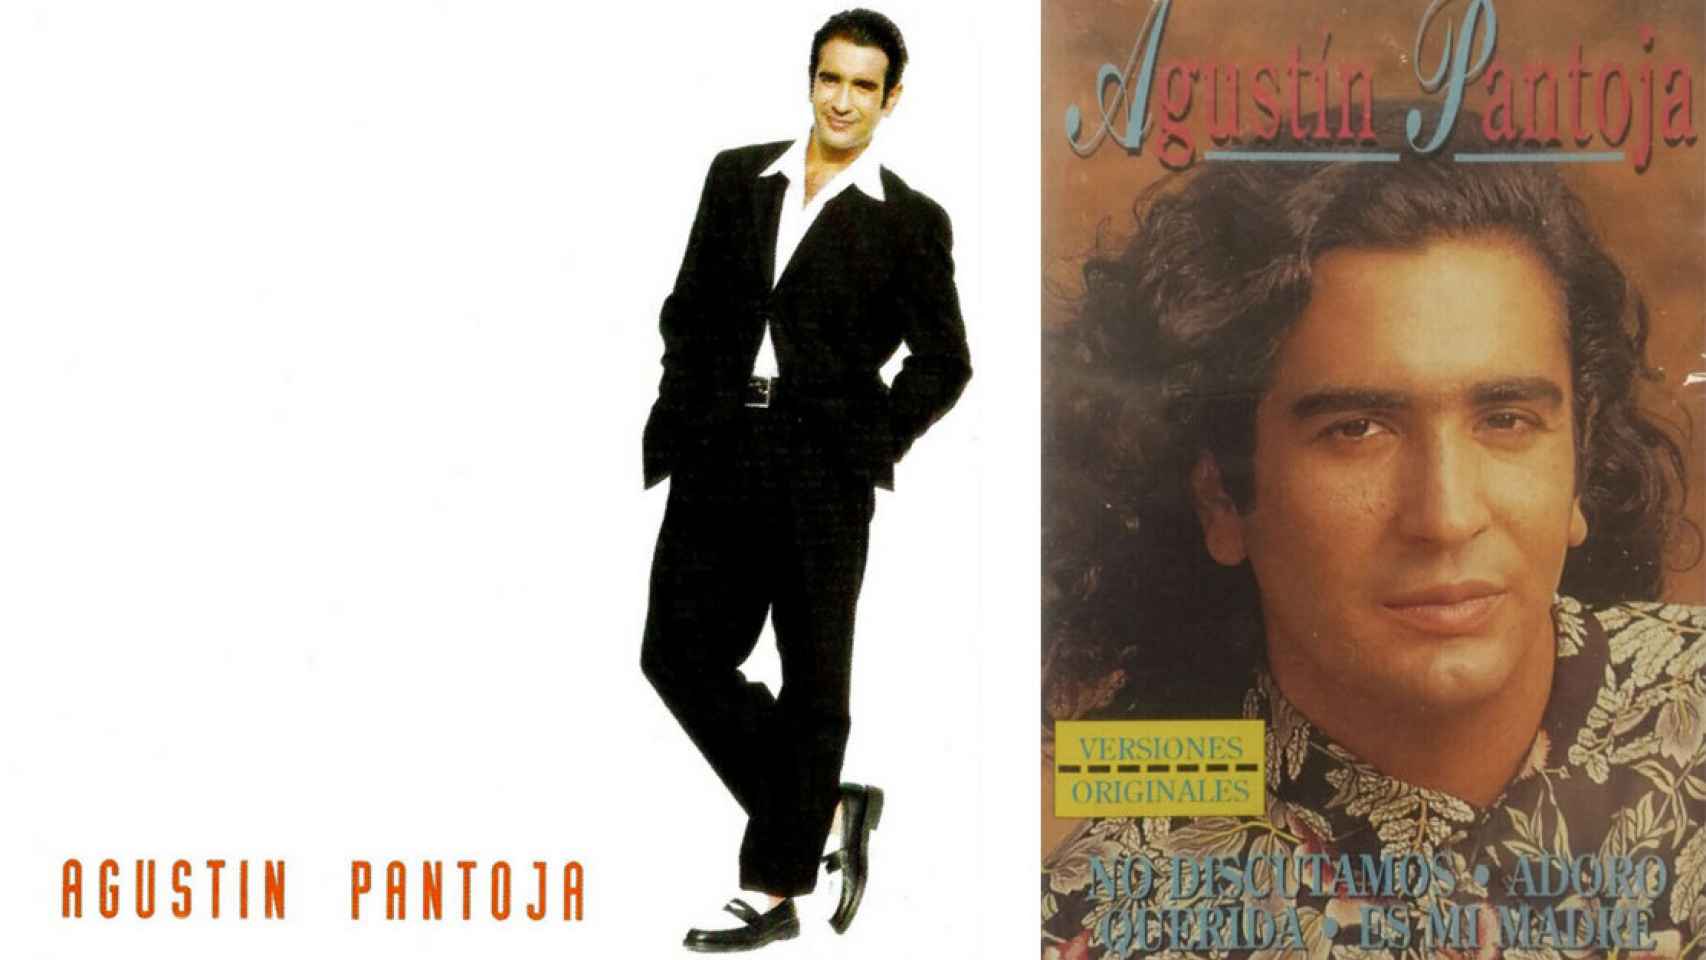 Agustín Pantoja en dos de sus trabajos discográficos